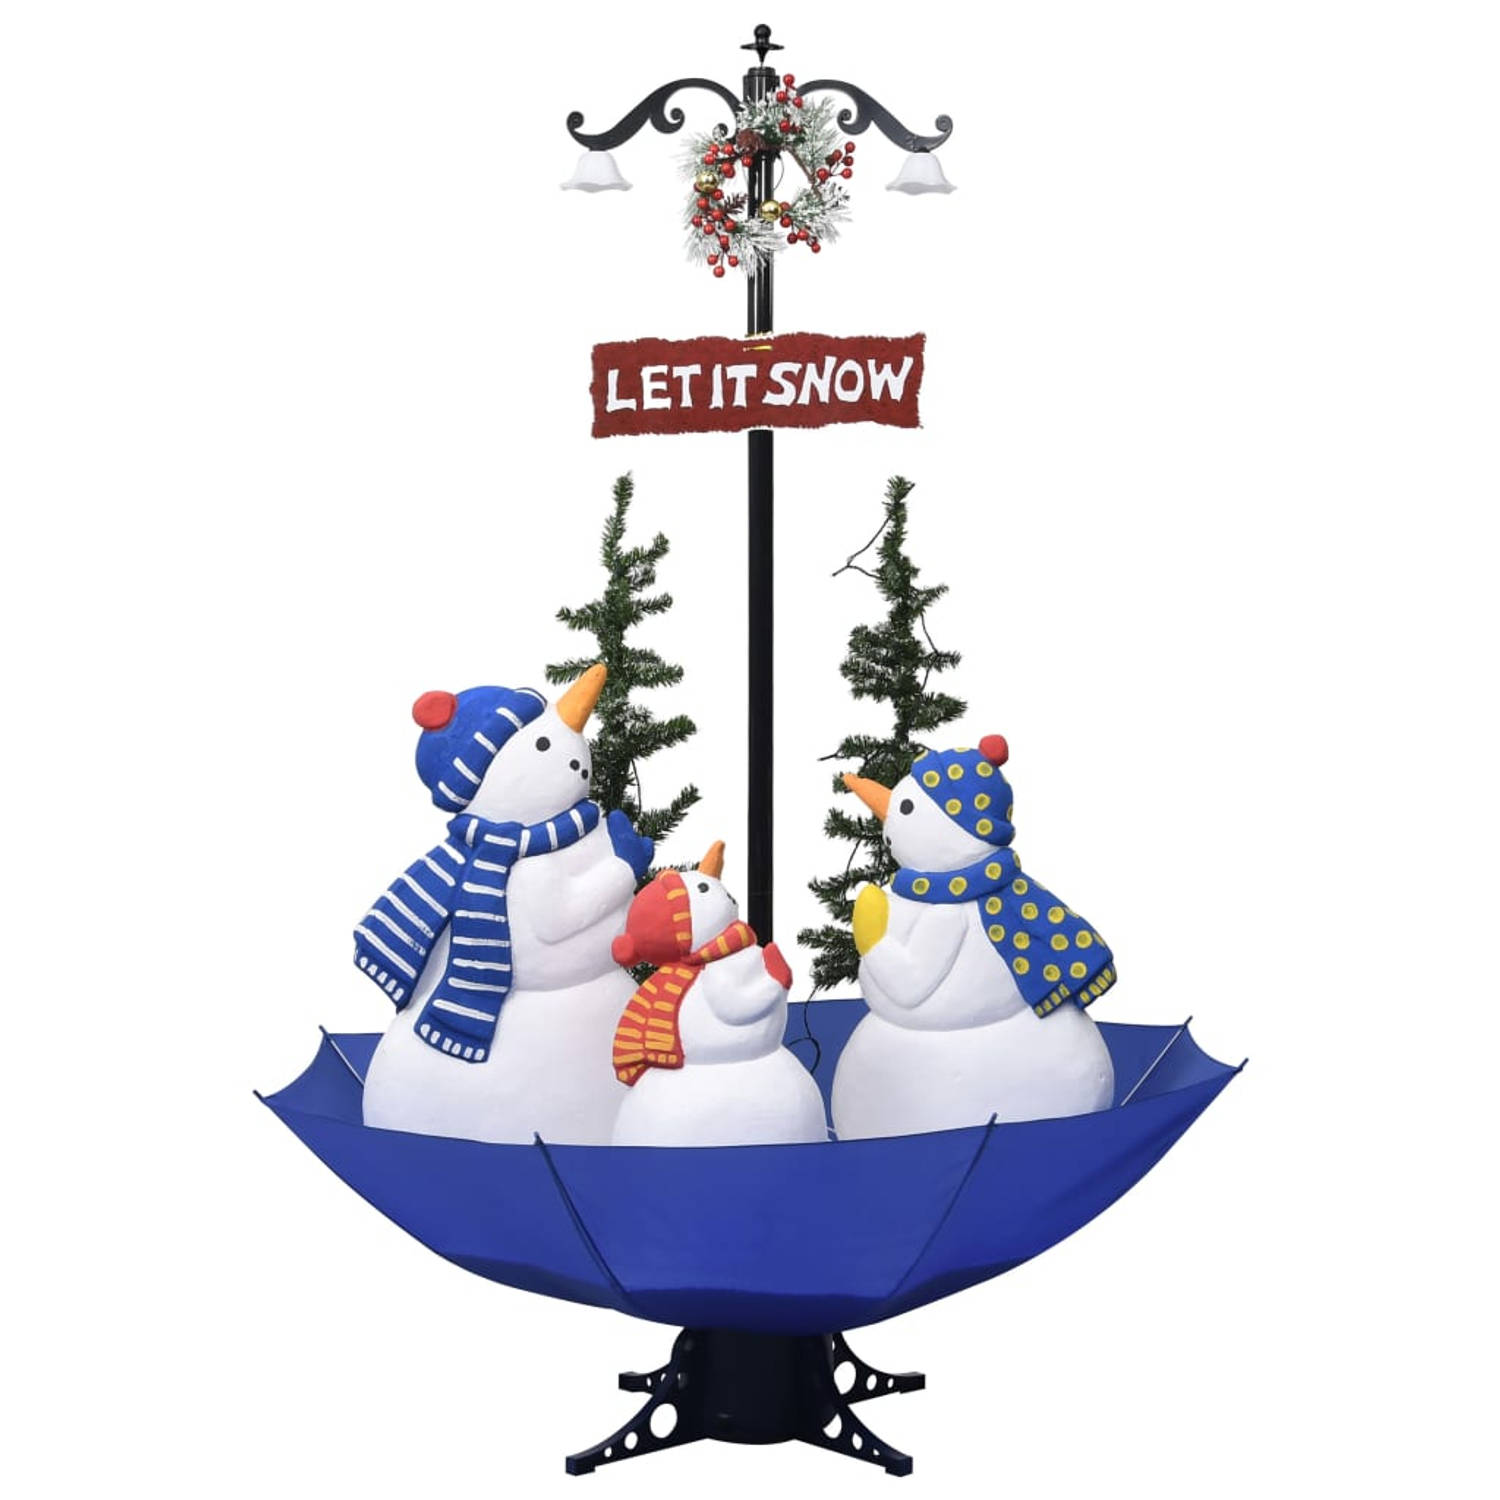 The Living Store Kerstboom sneeuwend met paraplubasis 170 cm PVC blauw - Decoratieve kerstboom